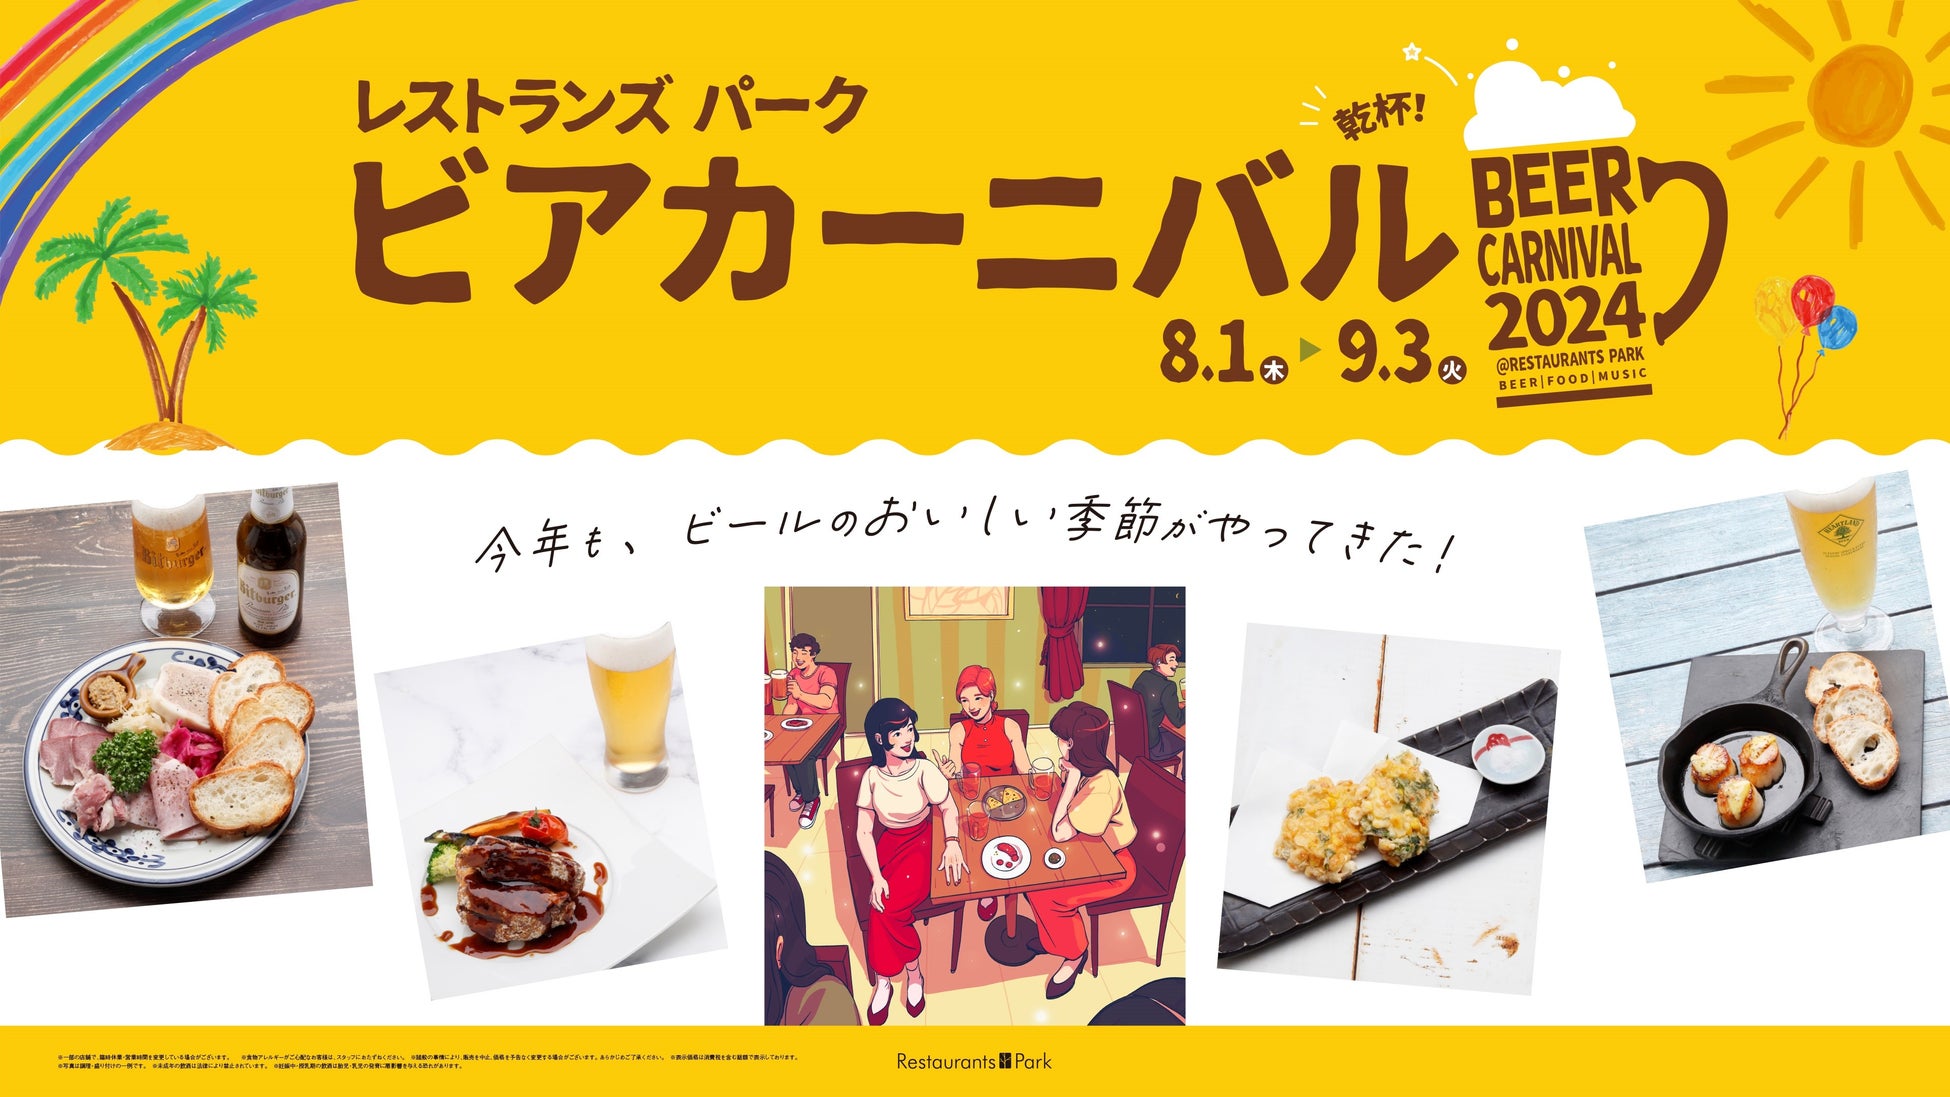 新宿高島屋レストランズ パークでビールとフードを楽しむ「ビアカーニバル2024」開幕